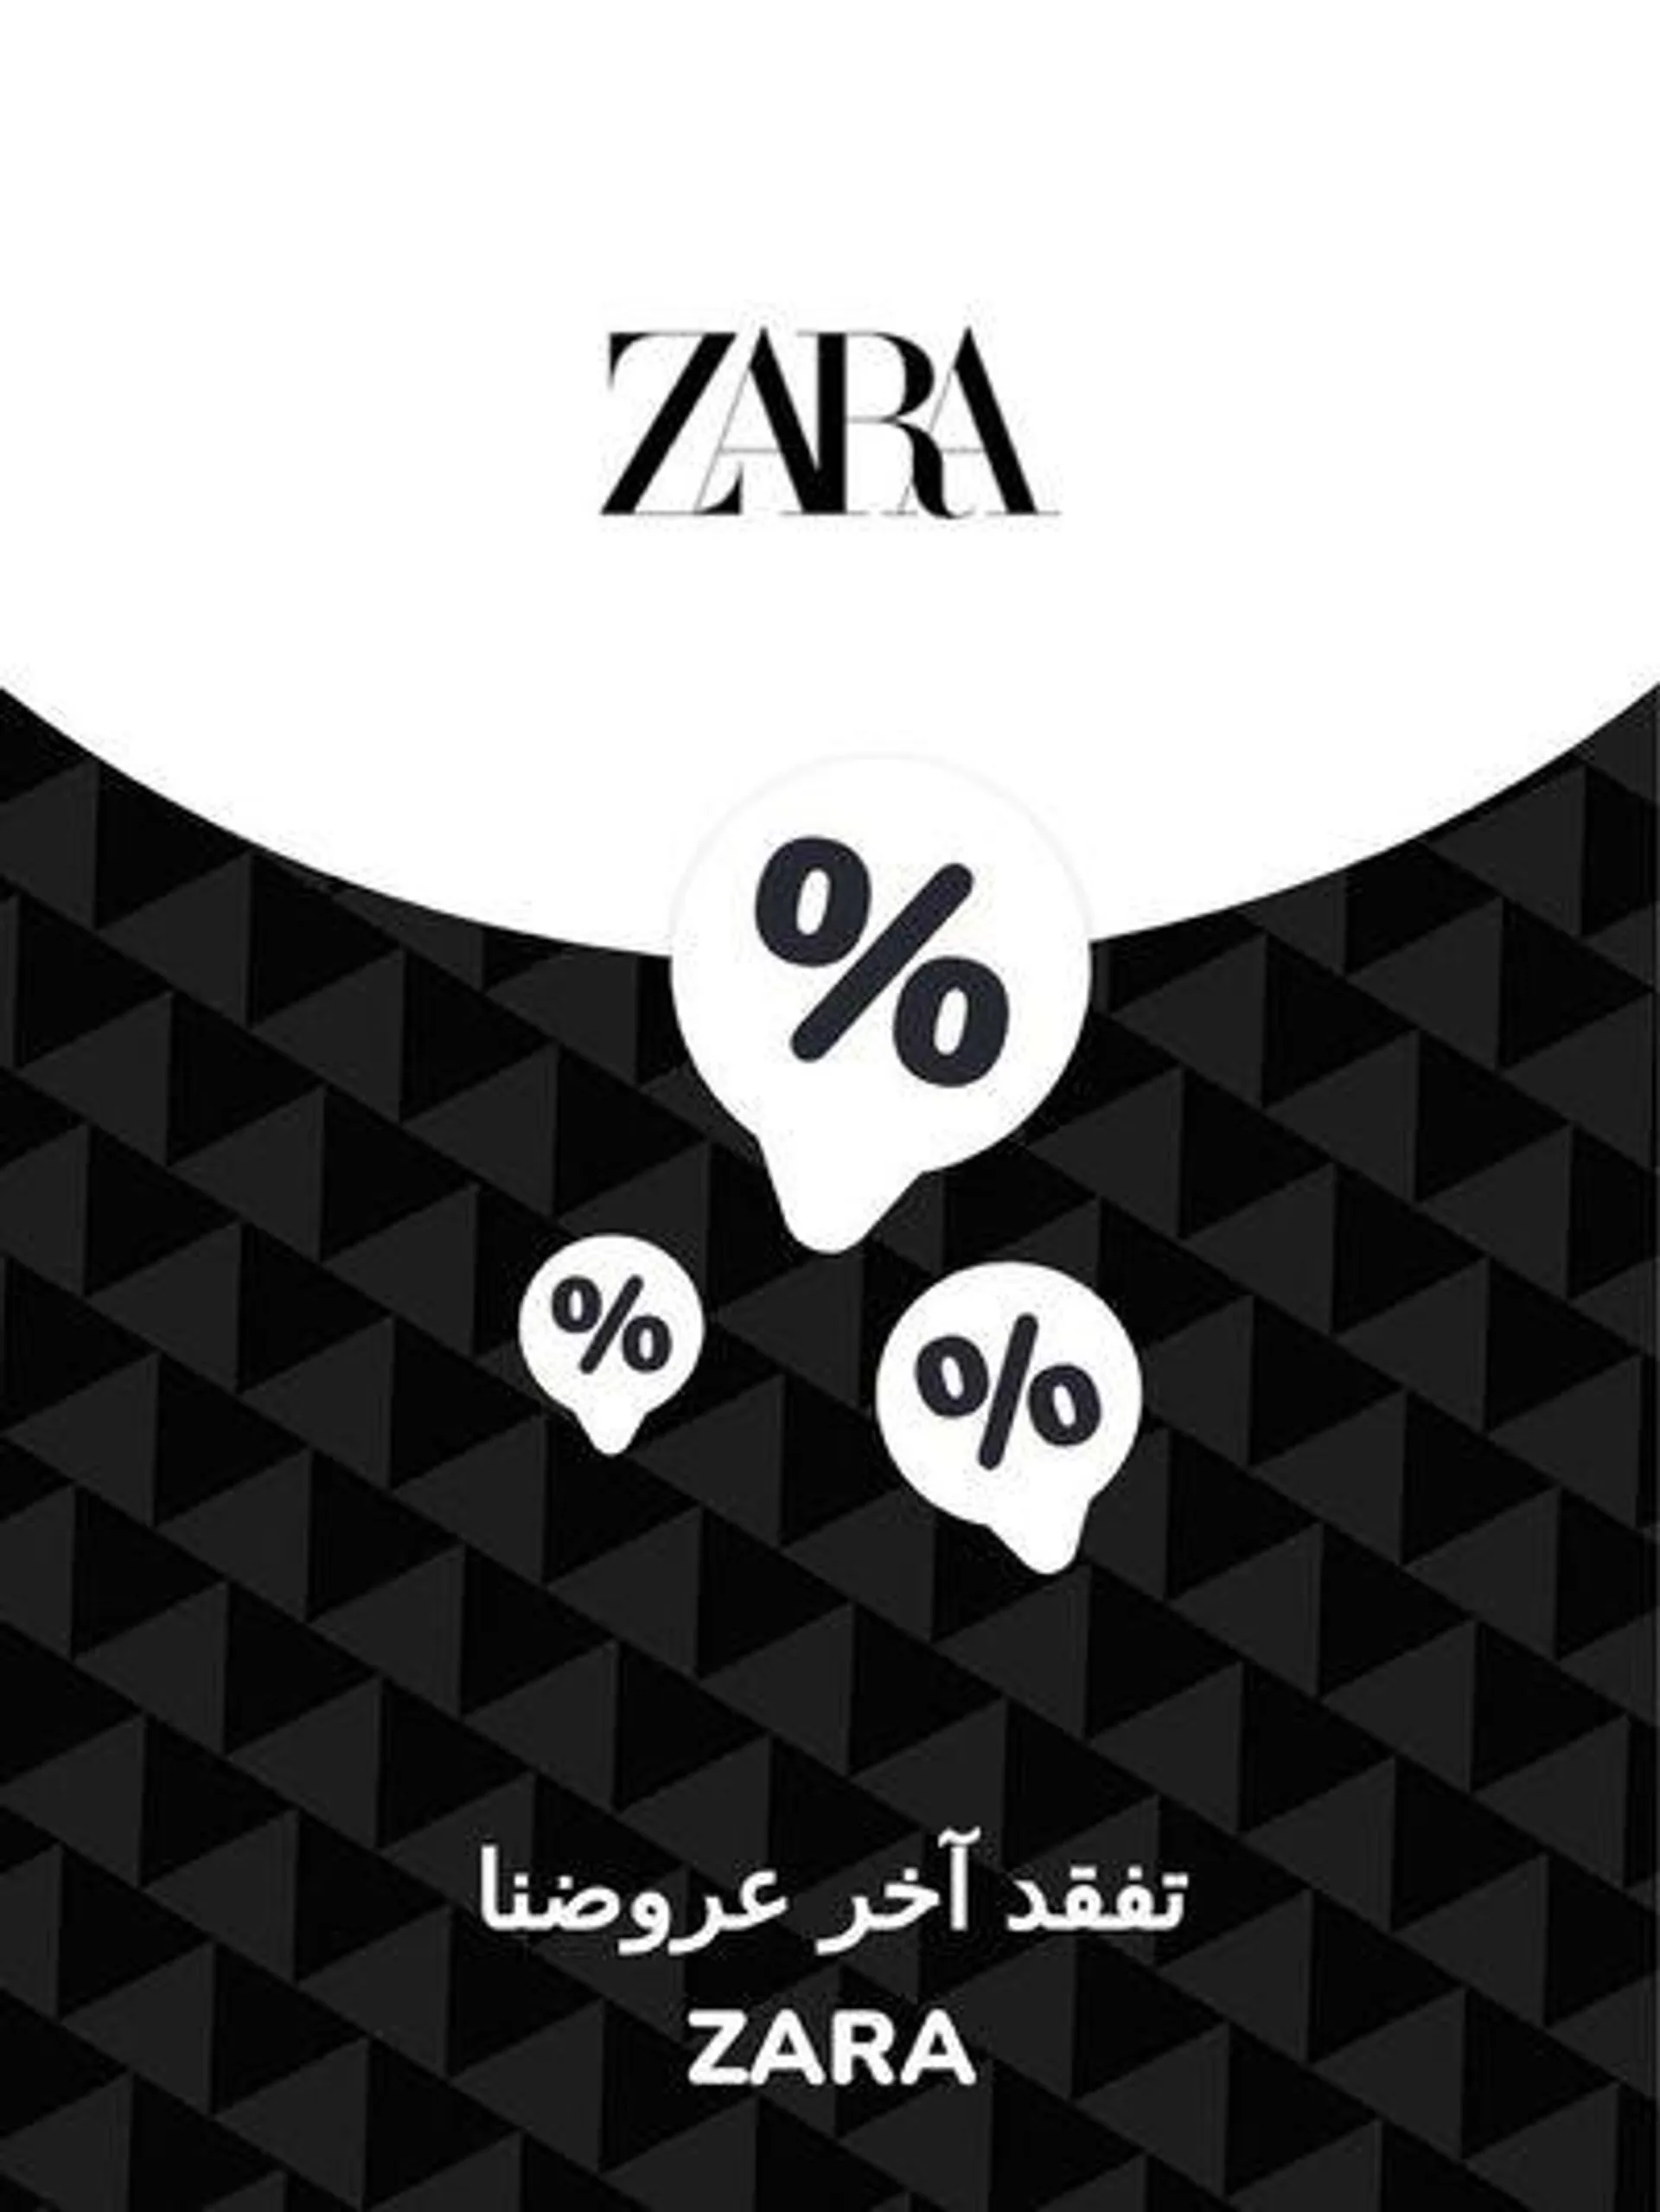 Offers Zara - 1